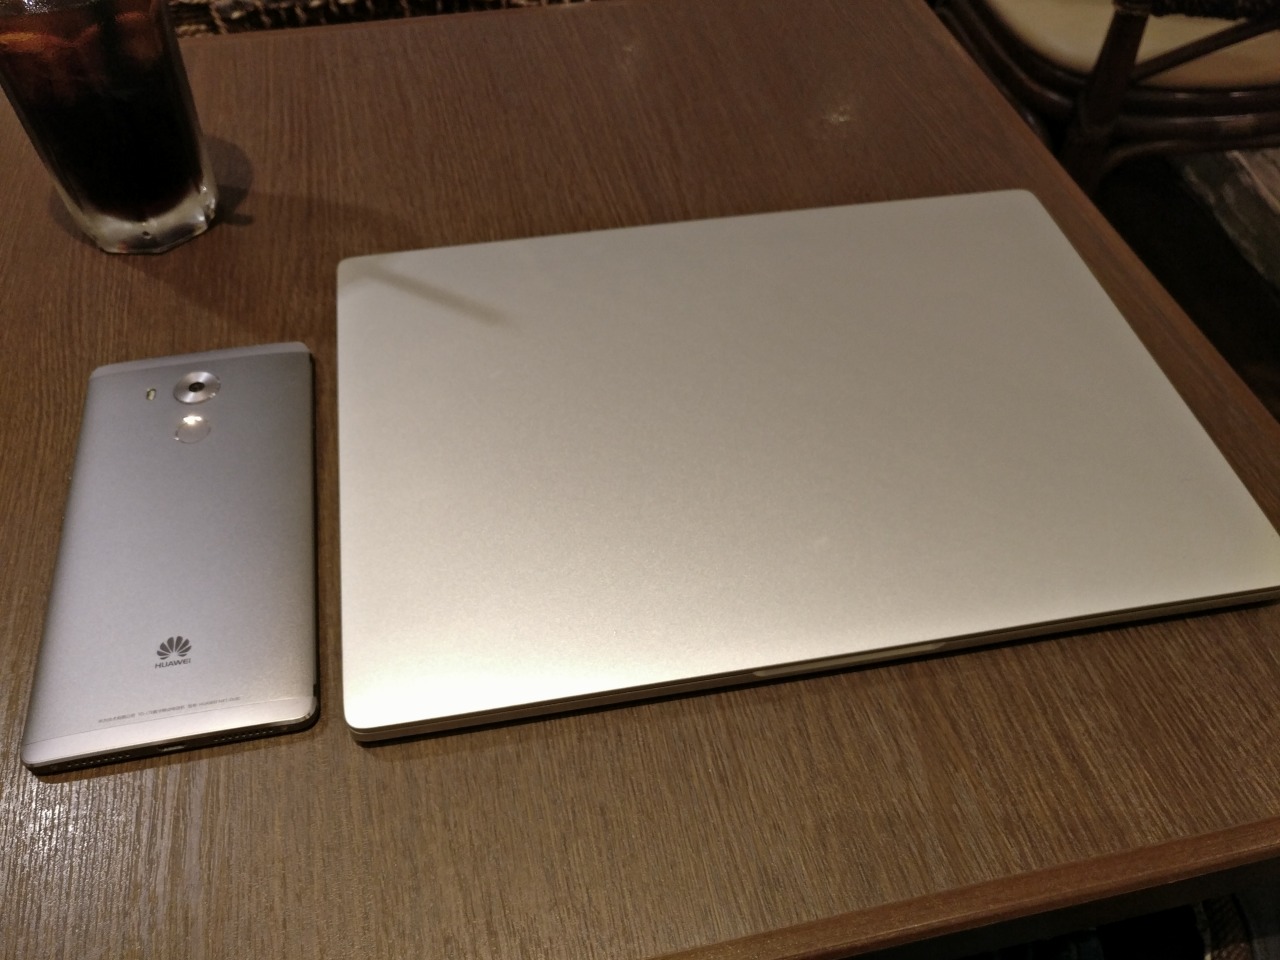 ファーストインプレッション Macbook瓜二つのxiaomi Mi Notebook Air 12 レビュー 綺麗な液晶 機敏な動作 軽量で薄型な筐体 どれも文句なしです 日本語もバッチリ Chinar ちなーる